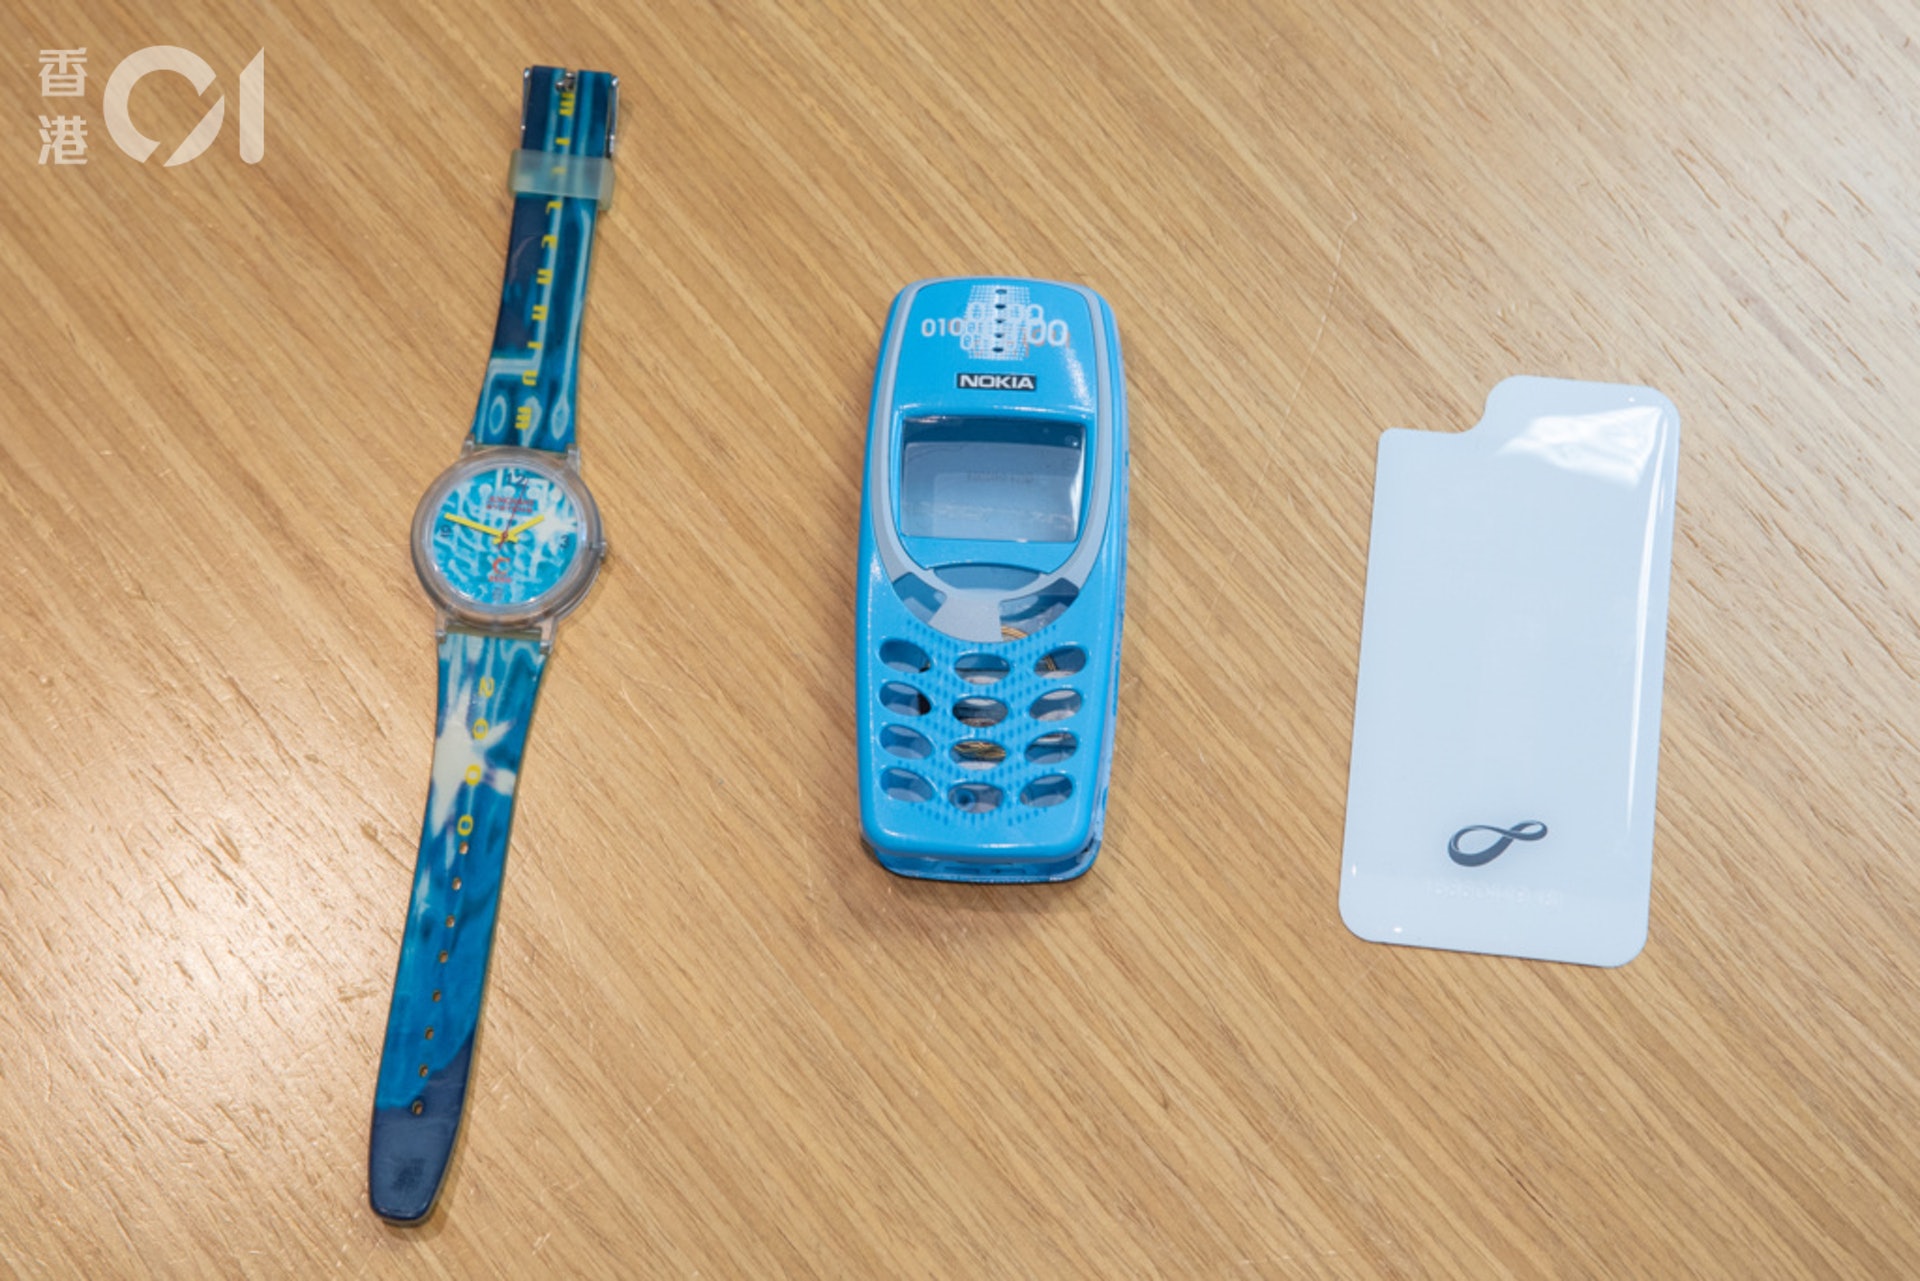 2002年，八達通推出「八達通諾基亞手機電池蓋」（中），算是第一代「手機八達通」，該款電池蓋專為Nokia經典款式3310手機而設計。